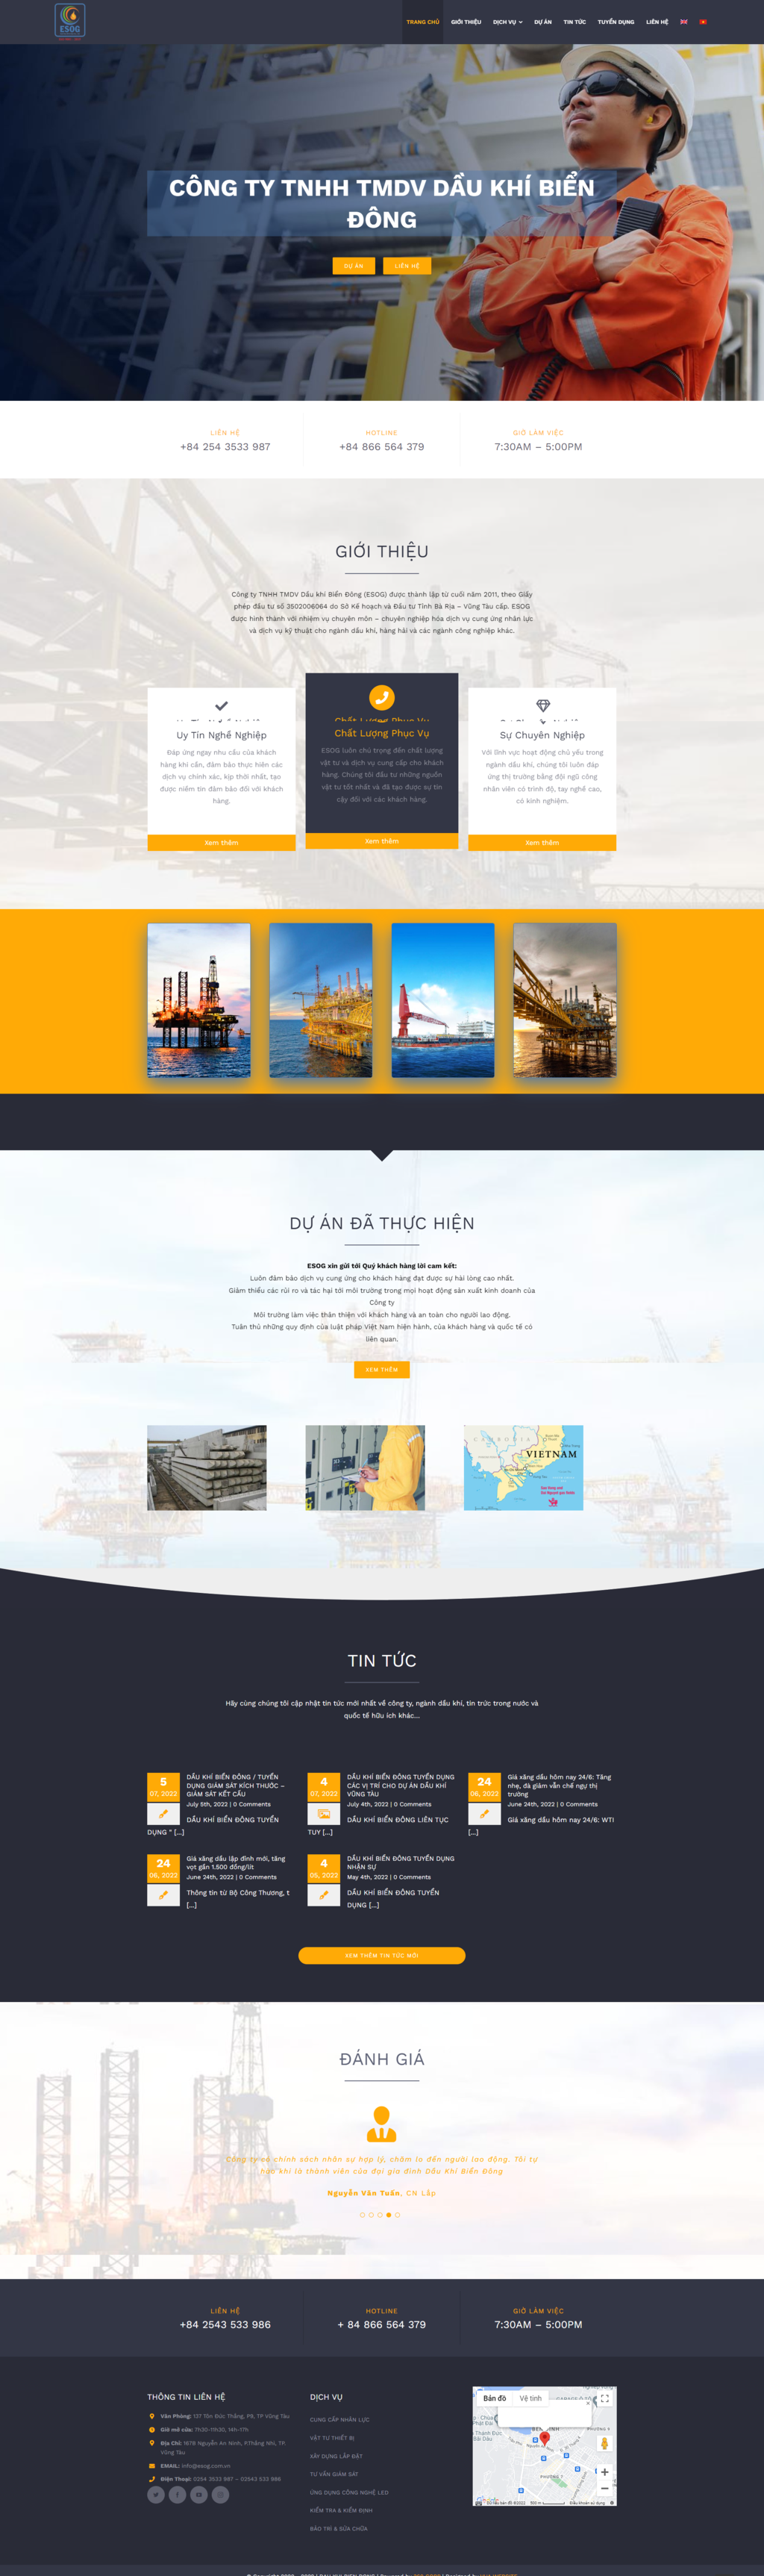 Thiết kế website dầu khí biển đông - Trang Chủ